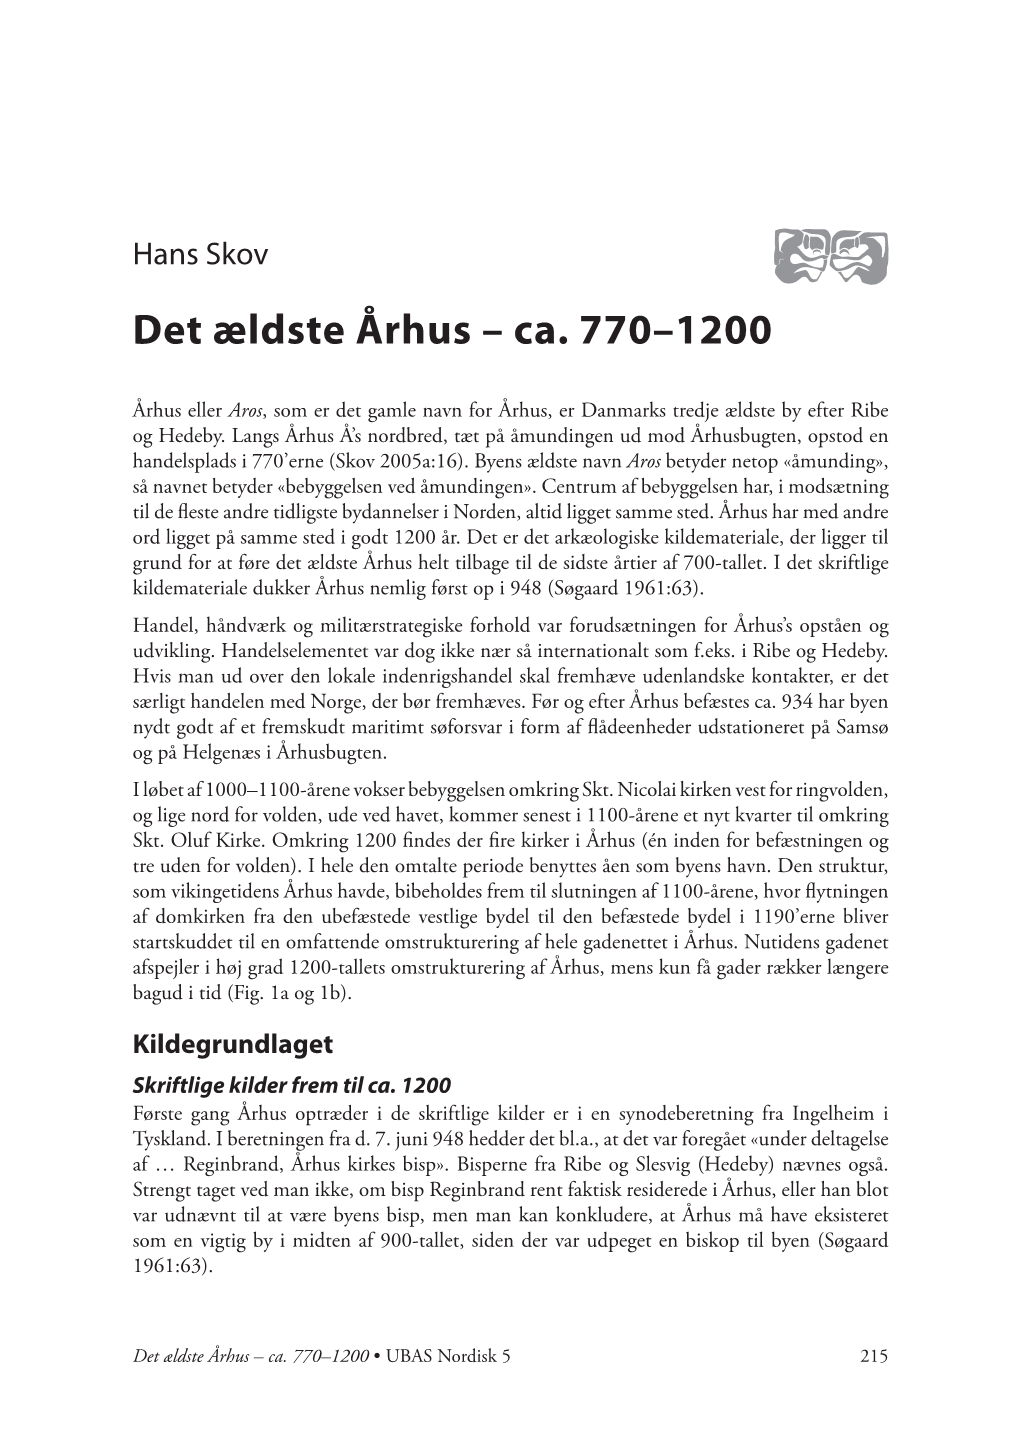 Det Ældste Århus – Ca. 770–1200